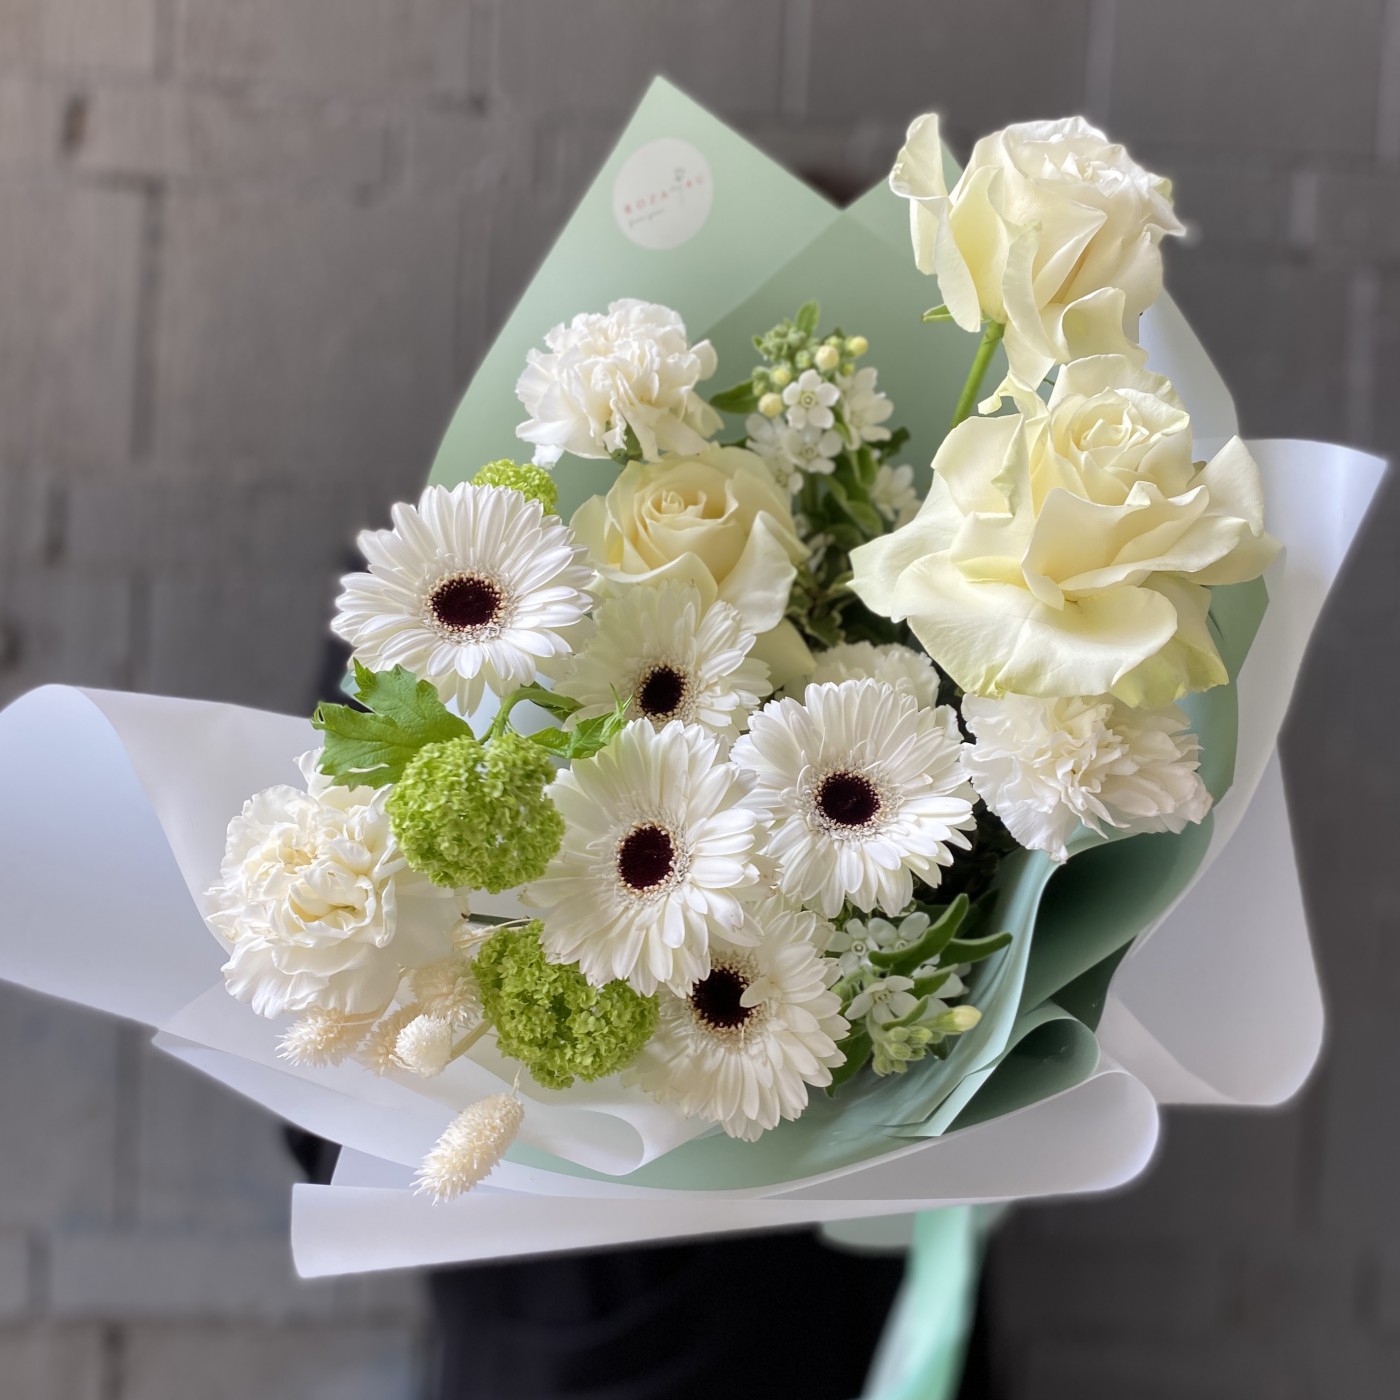 Купить свадебный букет из белых роз на свадьбу с доставкой по Москве и области